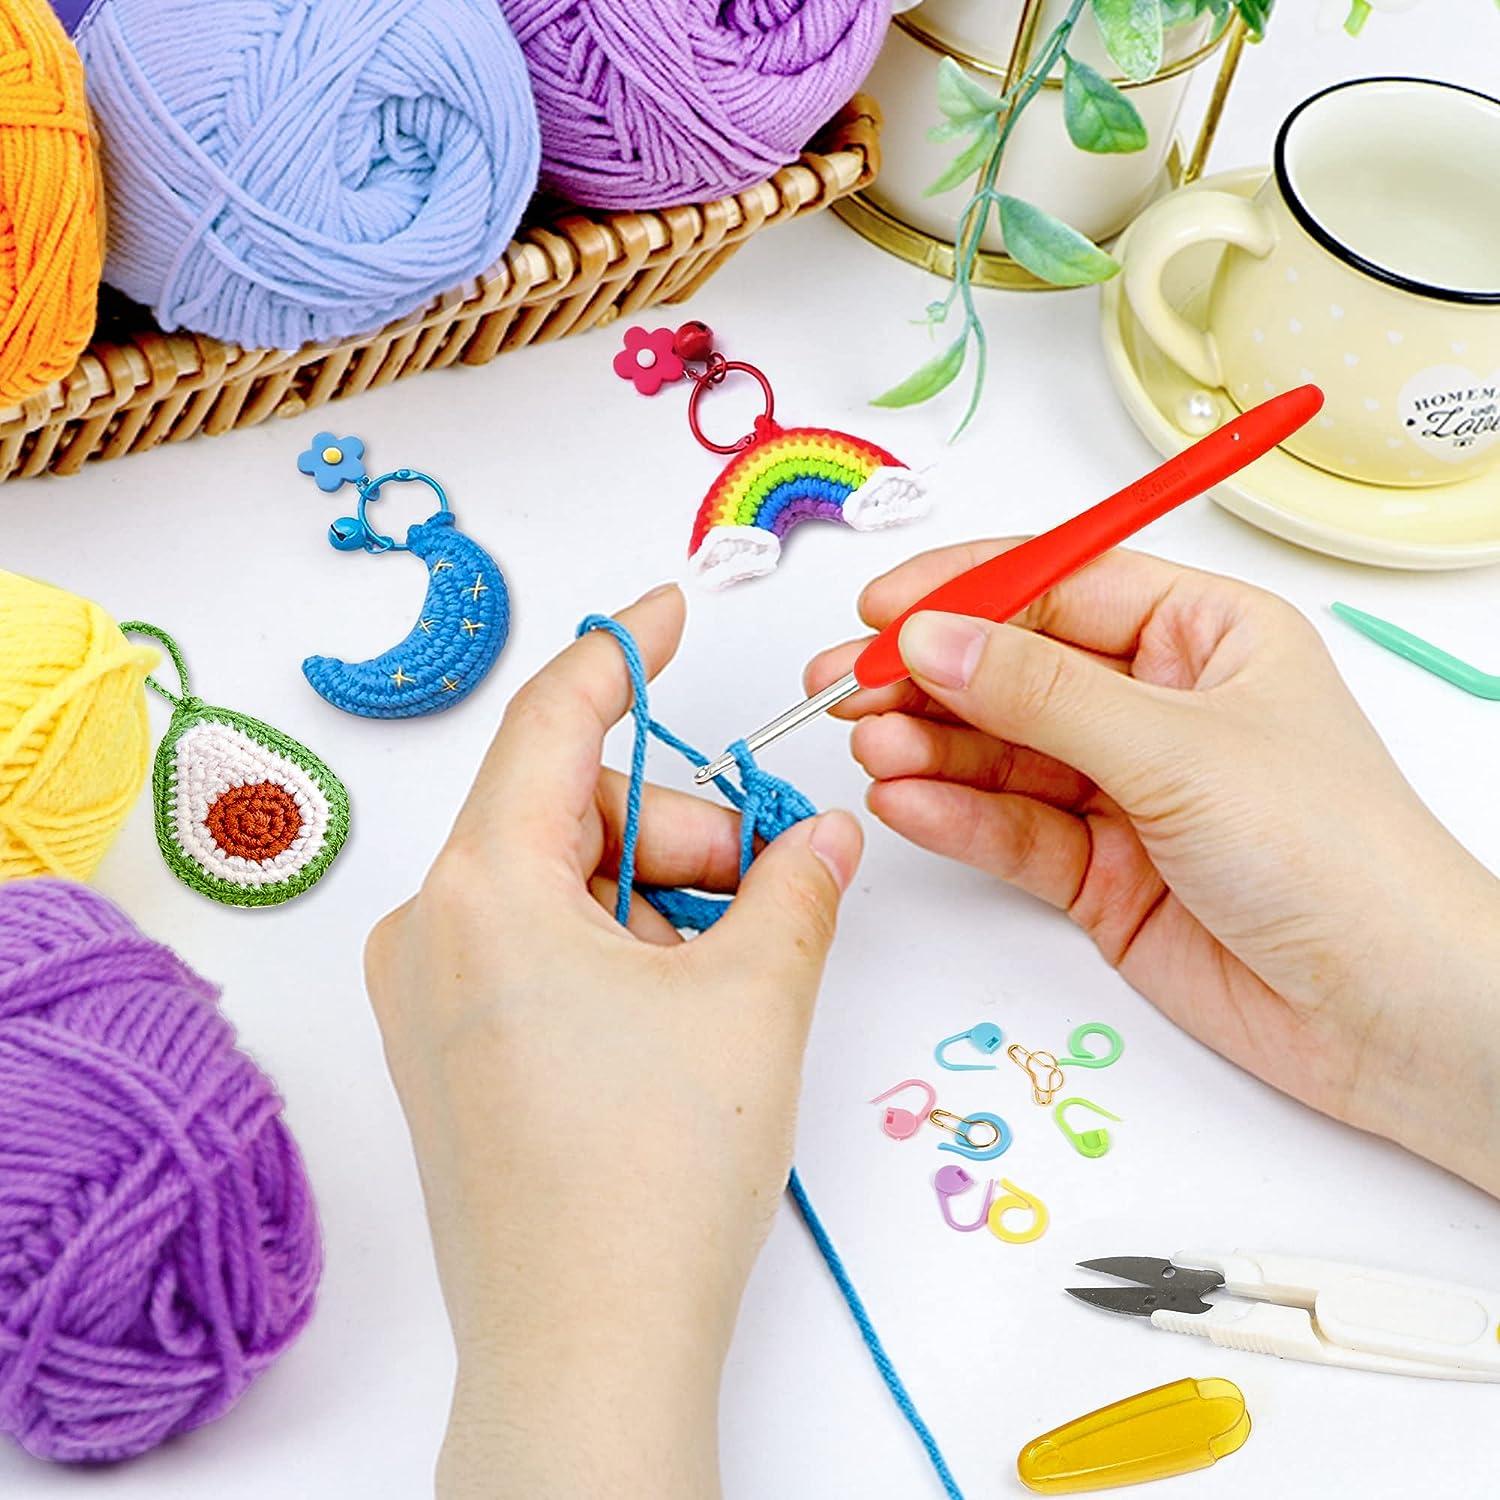 Crochet Kit for Beginners, 70 Pcs Beginners Crochet Kit for Adults Kids  black